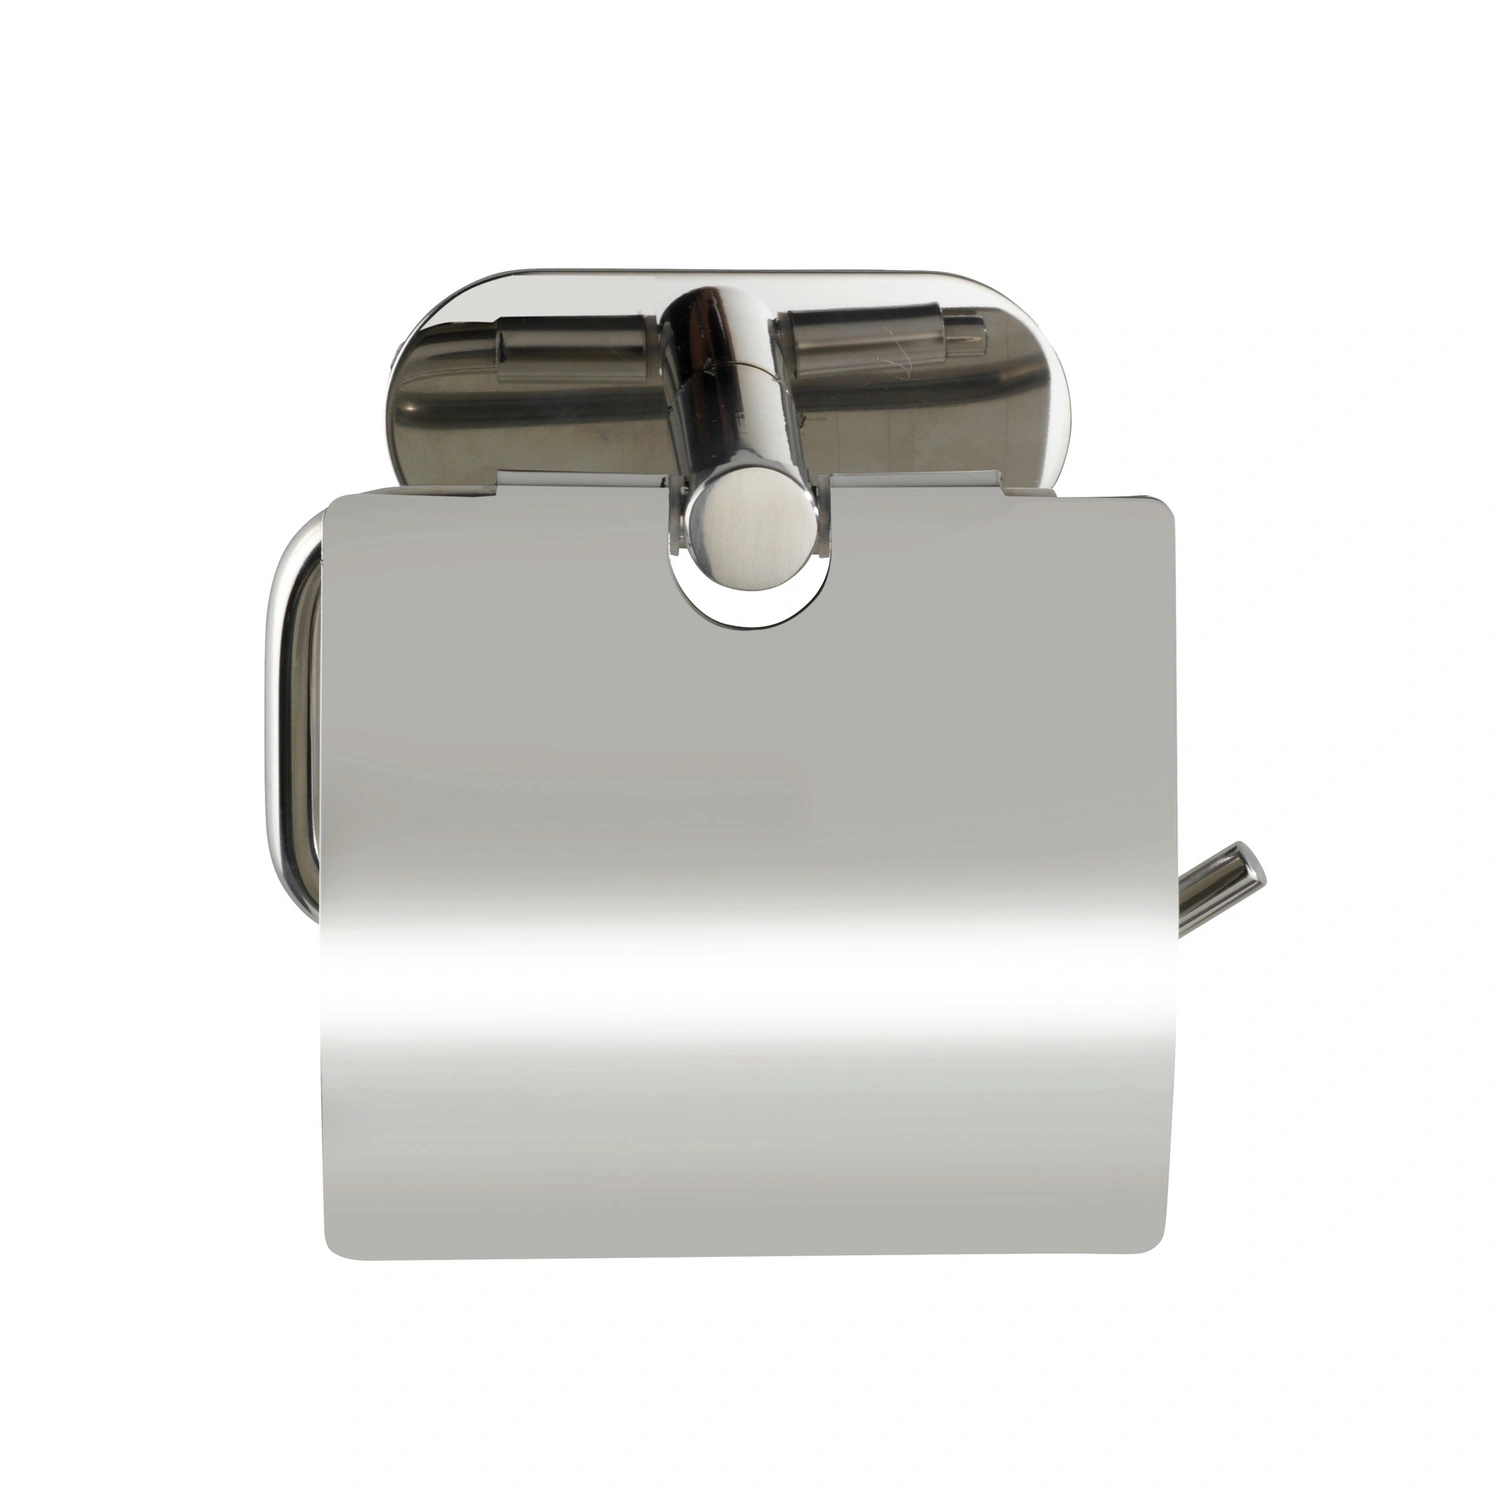 WENKO Toilettenpapierhalter Edelstahl, Orea glänzend »Turbo-Loc shine«